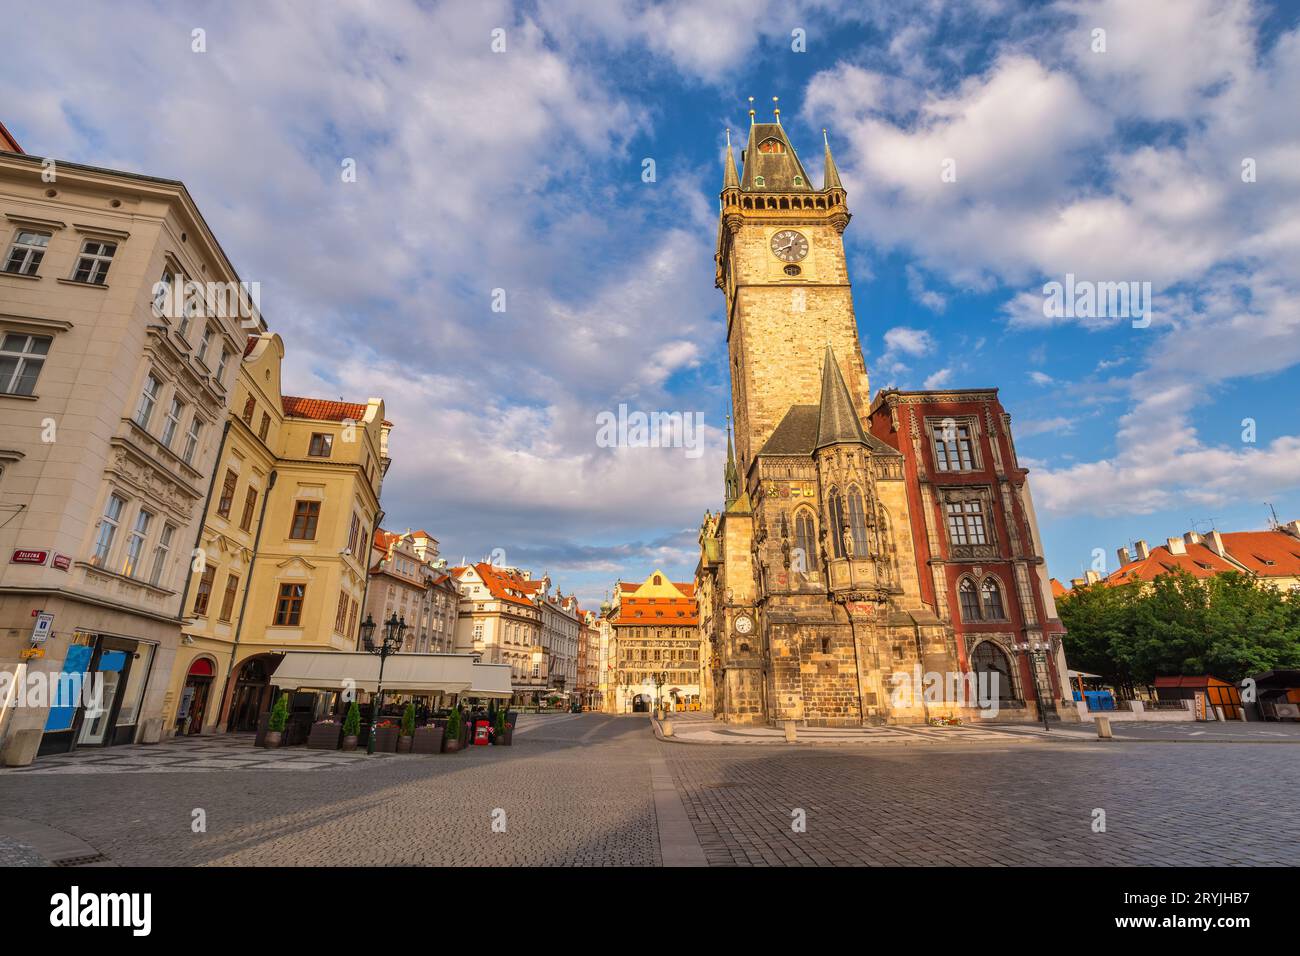 Praga Repubblica Ceca, skyline della città nella piazza della città vecchia di Praga, Czechia Foto Stock